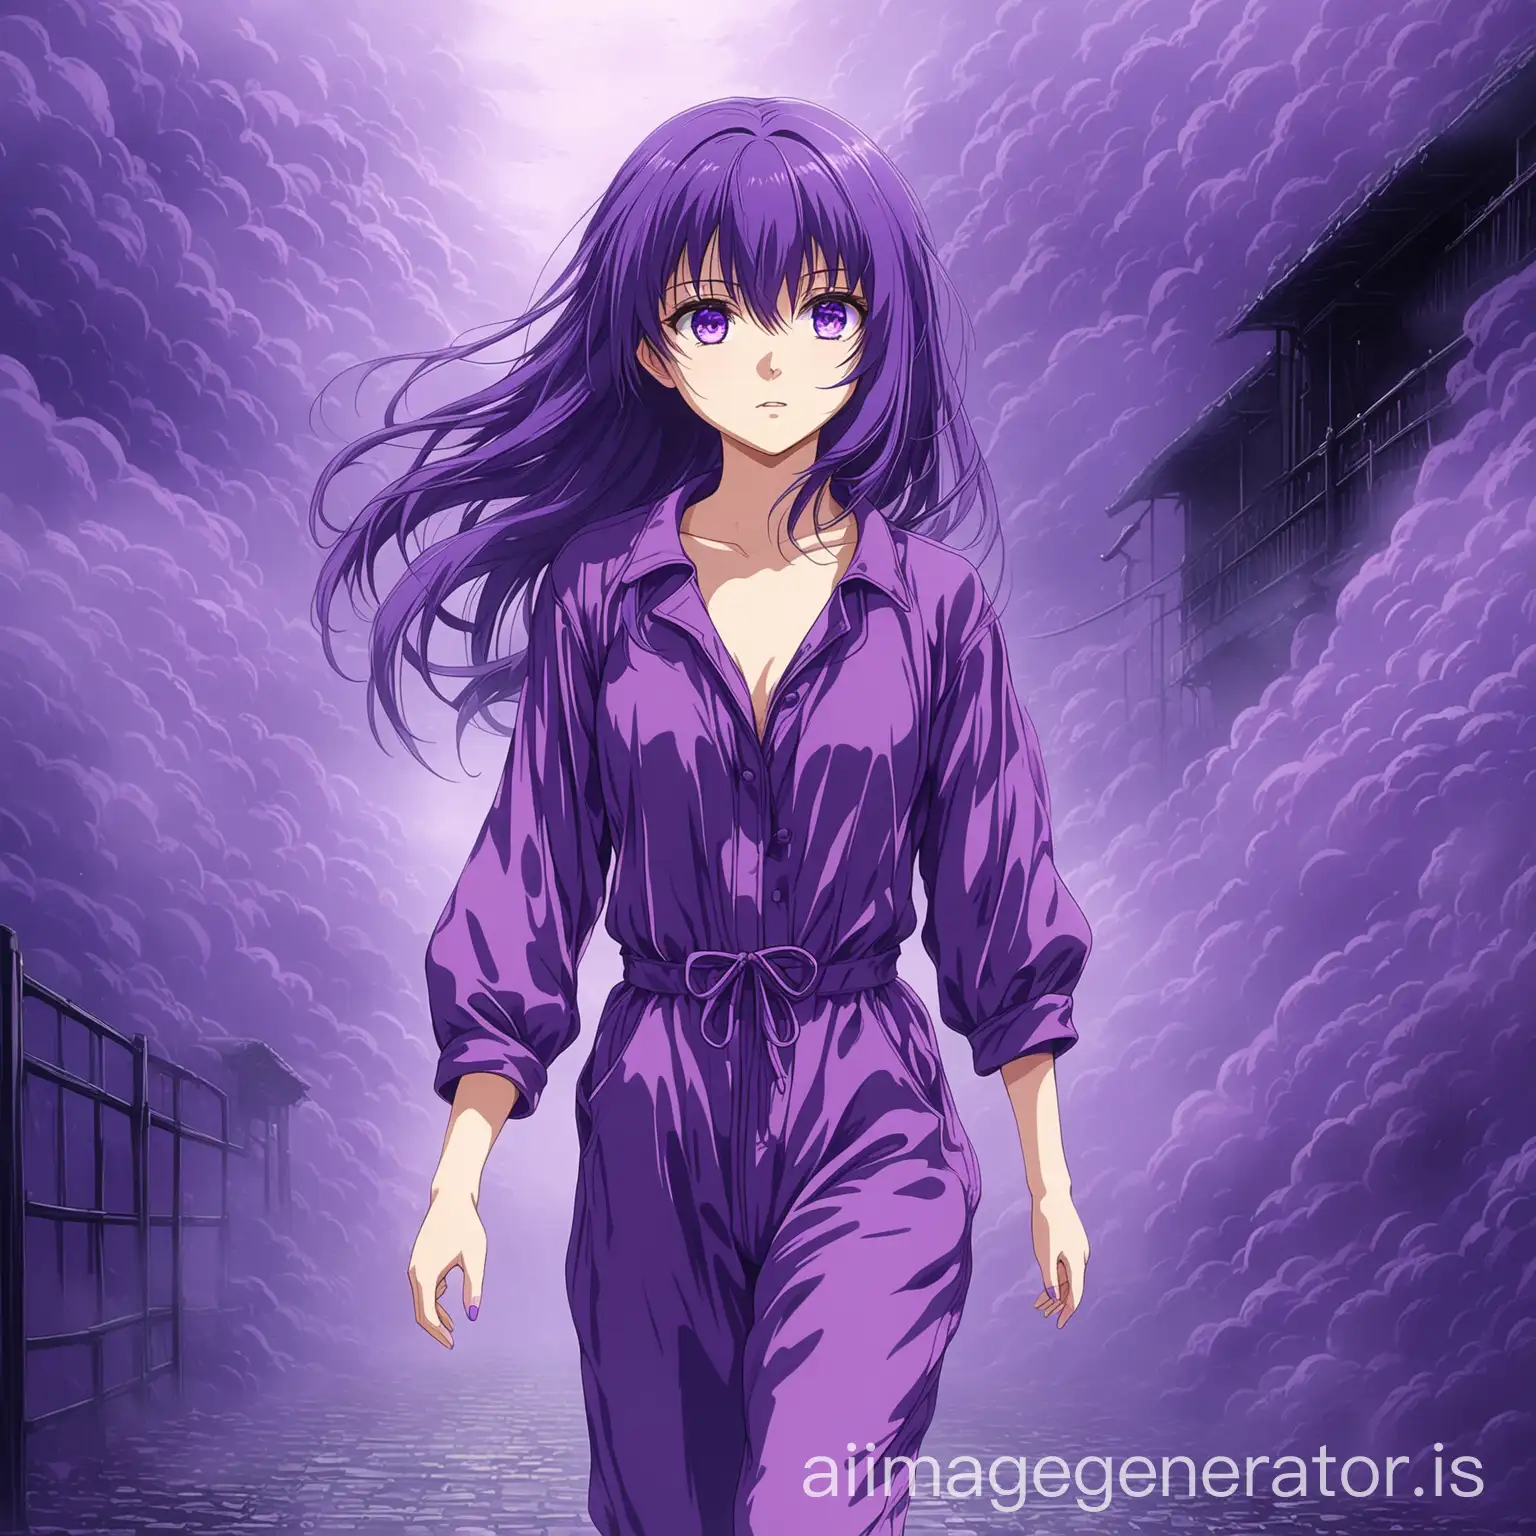 pretty anime girl, purple hair, purple eyes, in a purple jumpsuit, walking in purple mist